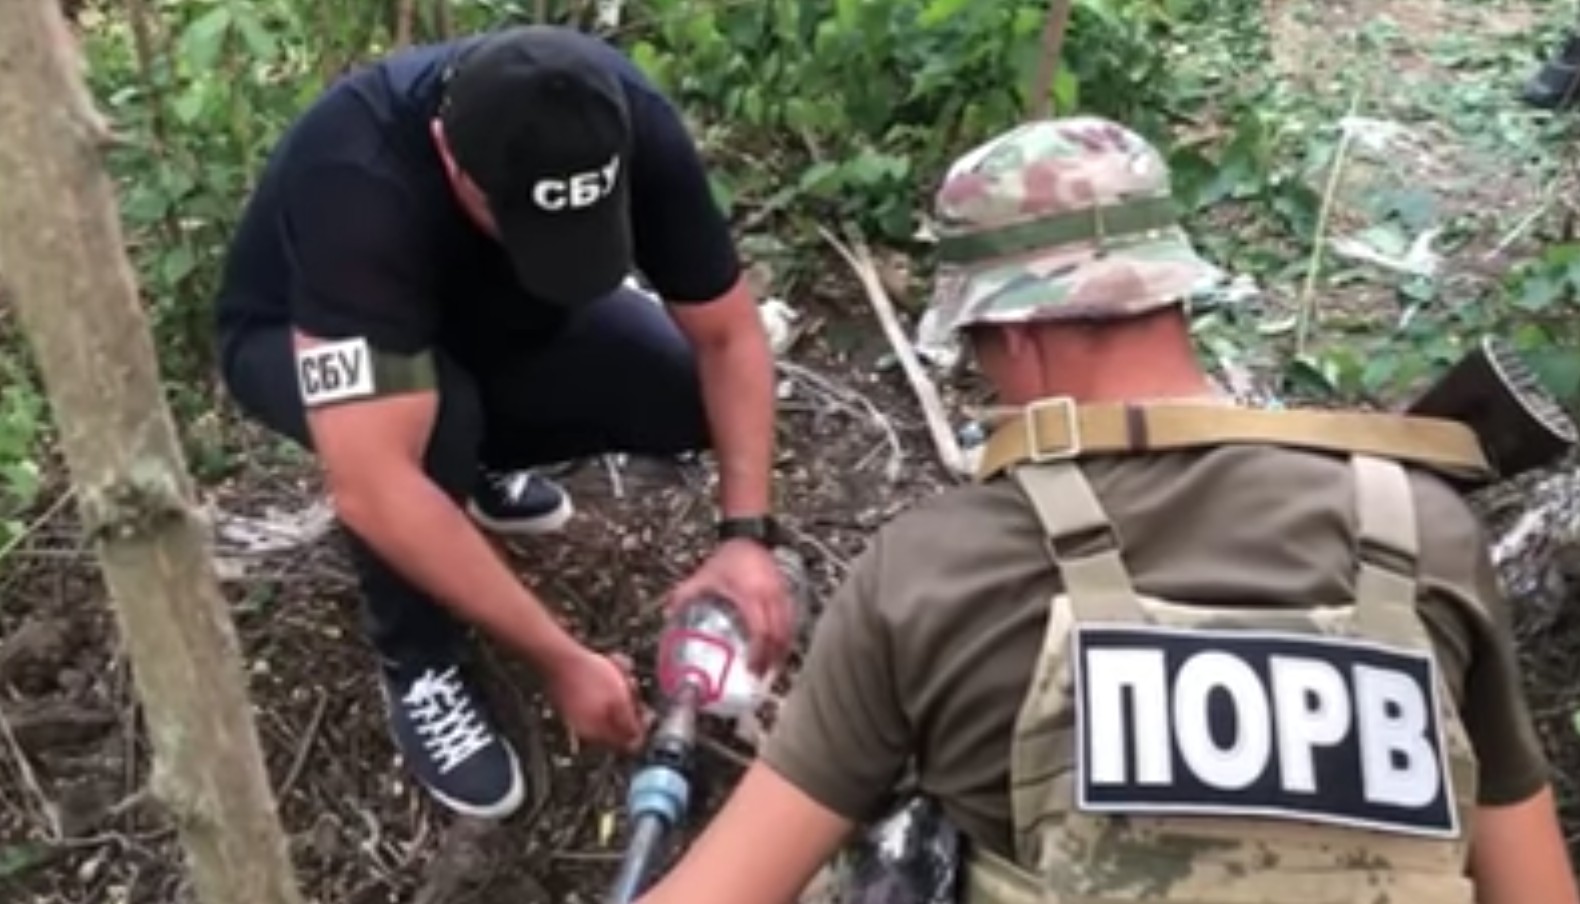 Oficiais encontram duto ilegal de vodka durante operação na fronteira da Ucrânia (Foto: Reprodução/Governo da Ucrânia)